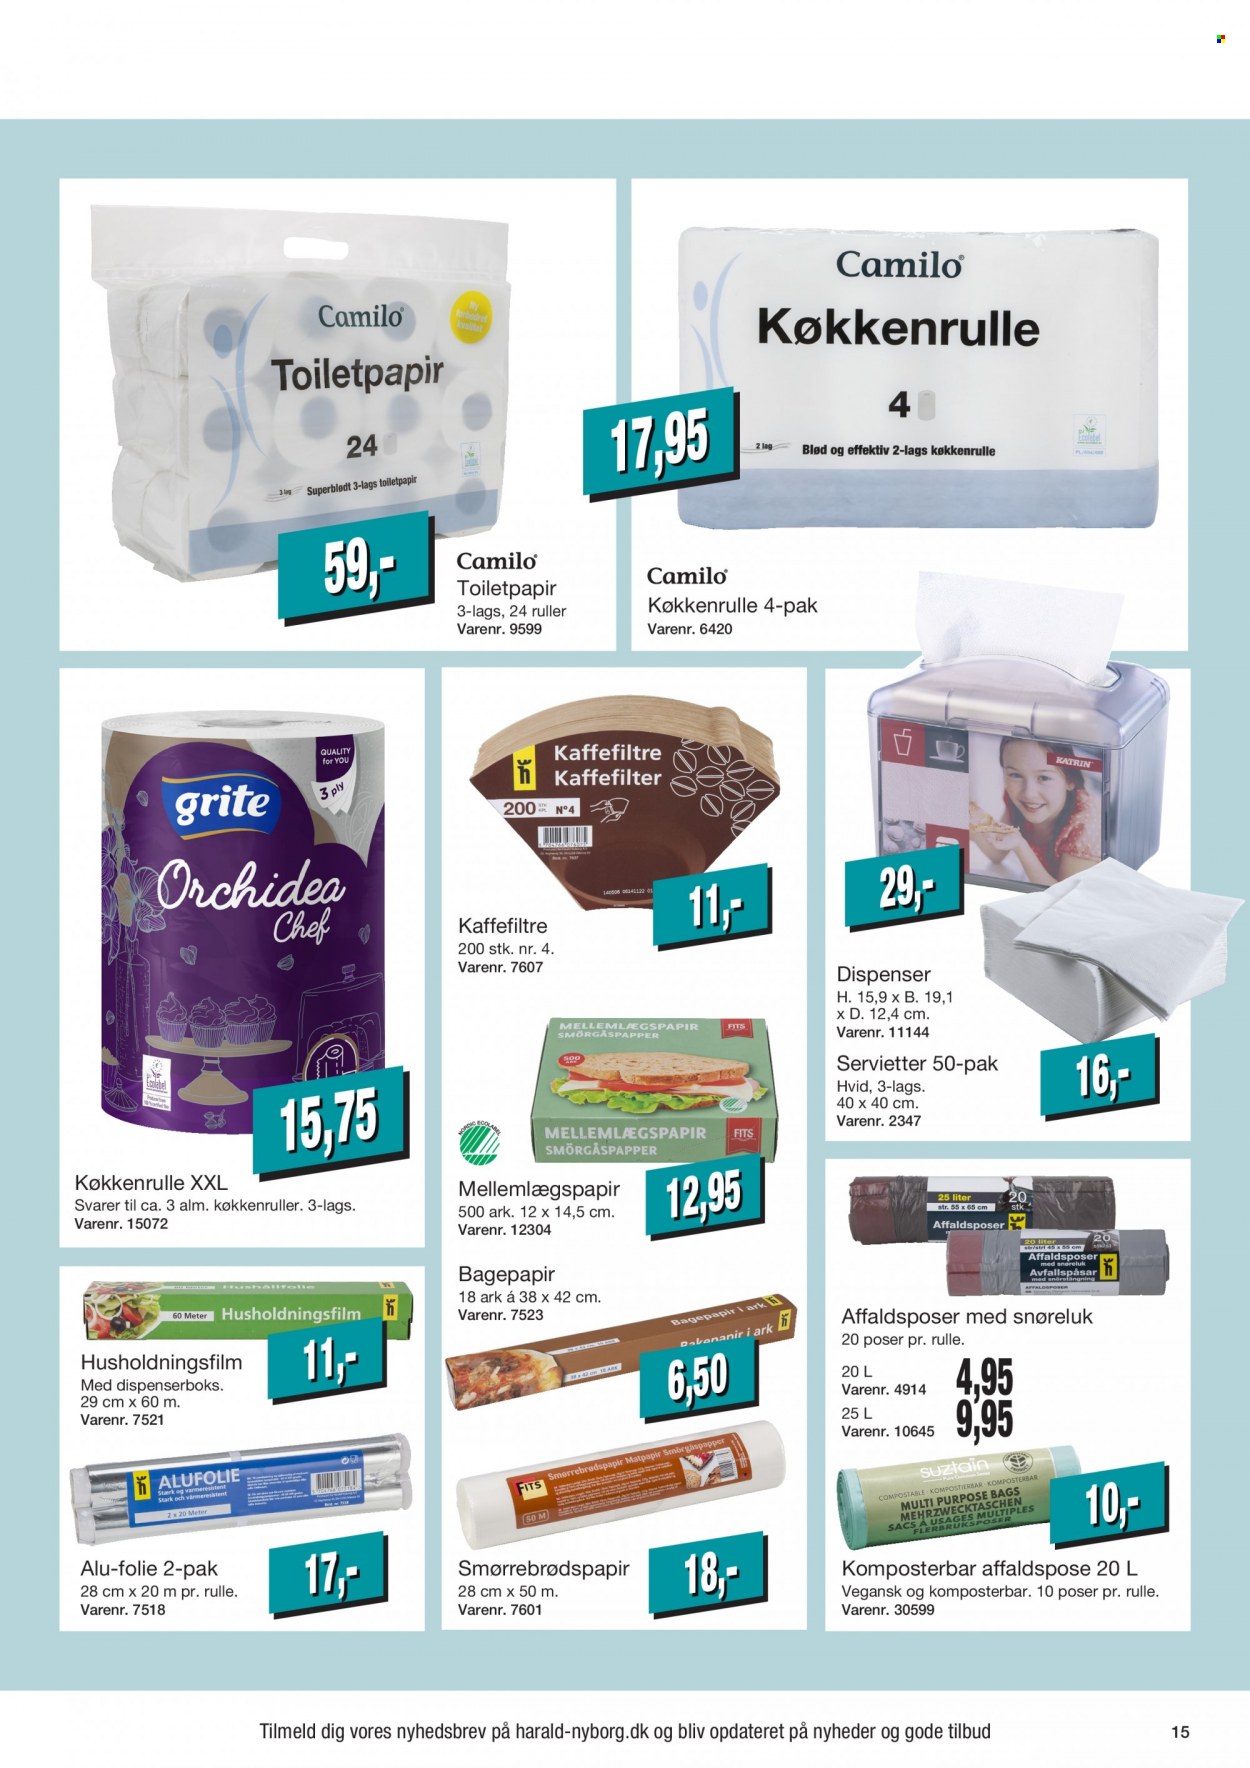 thumbnail - Harald Nyborg tilbud  - 23.6.2022 - 29.6.2022 - tilbudsprodukter - køkkenrulle, servietter, toiletpapir, dispenser. Side 15.